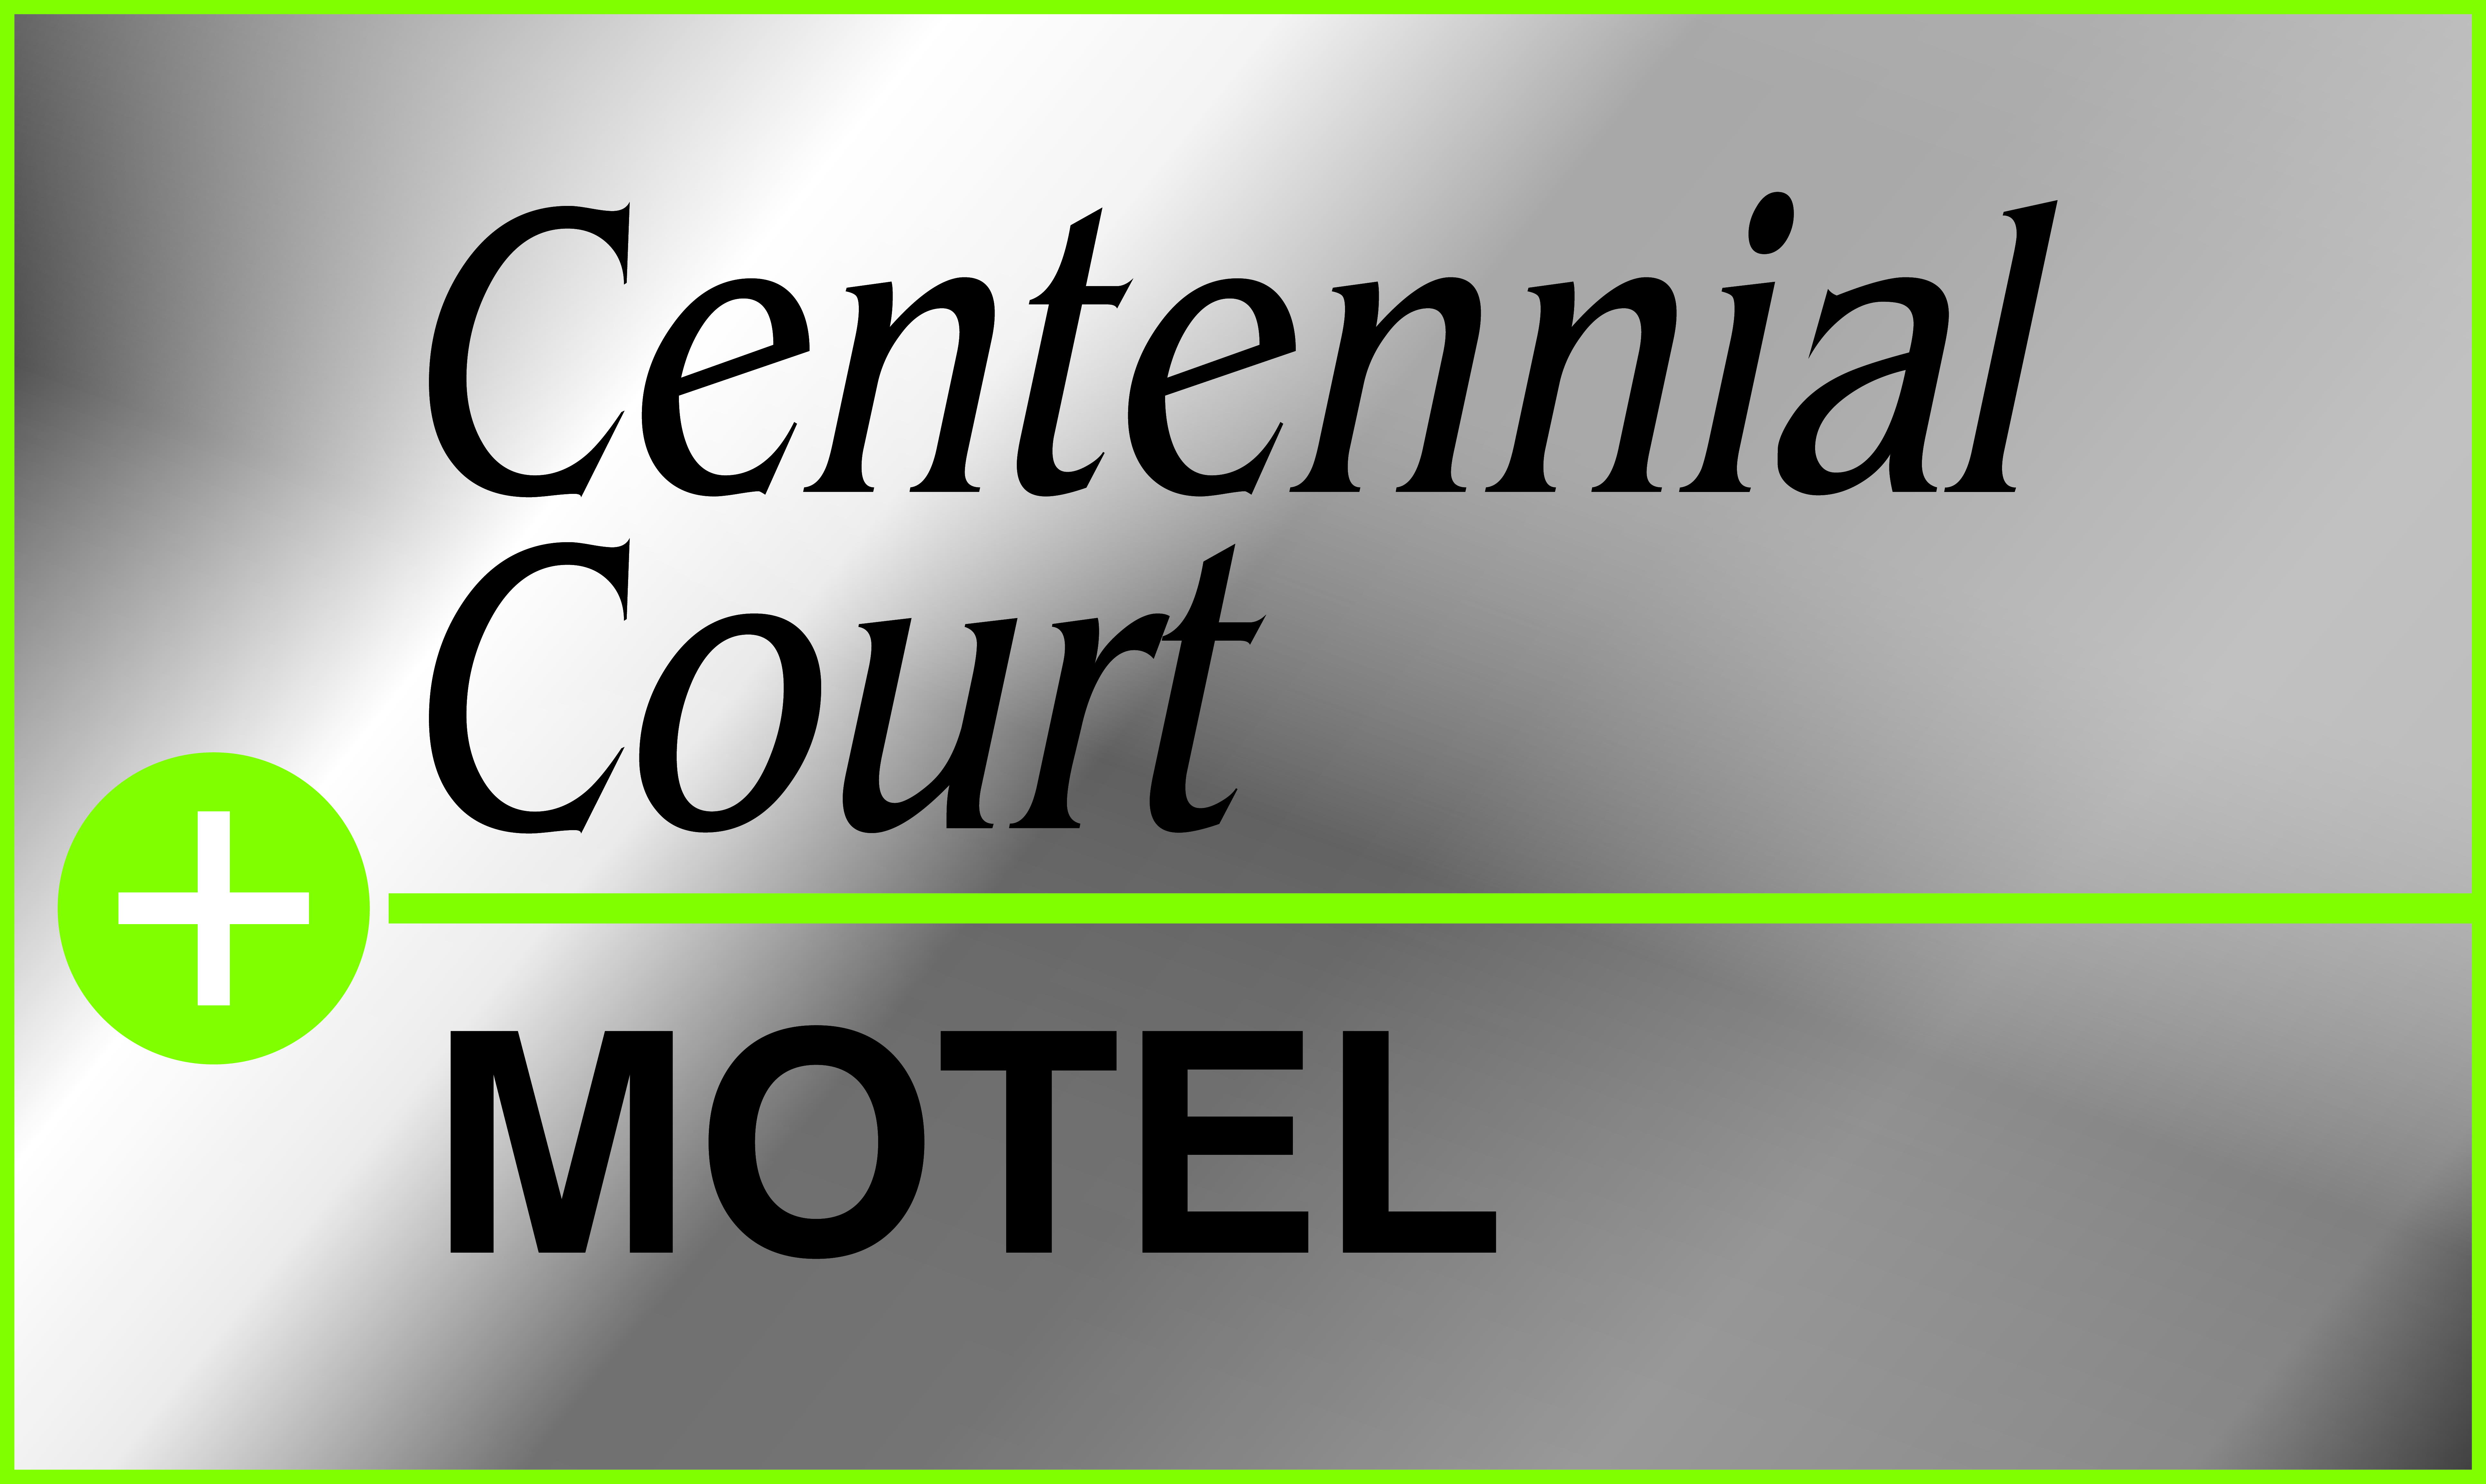 
Centennial Court Hotel